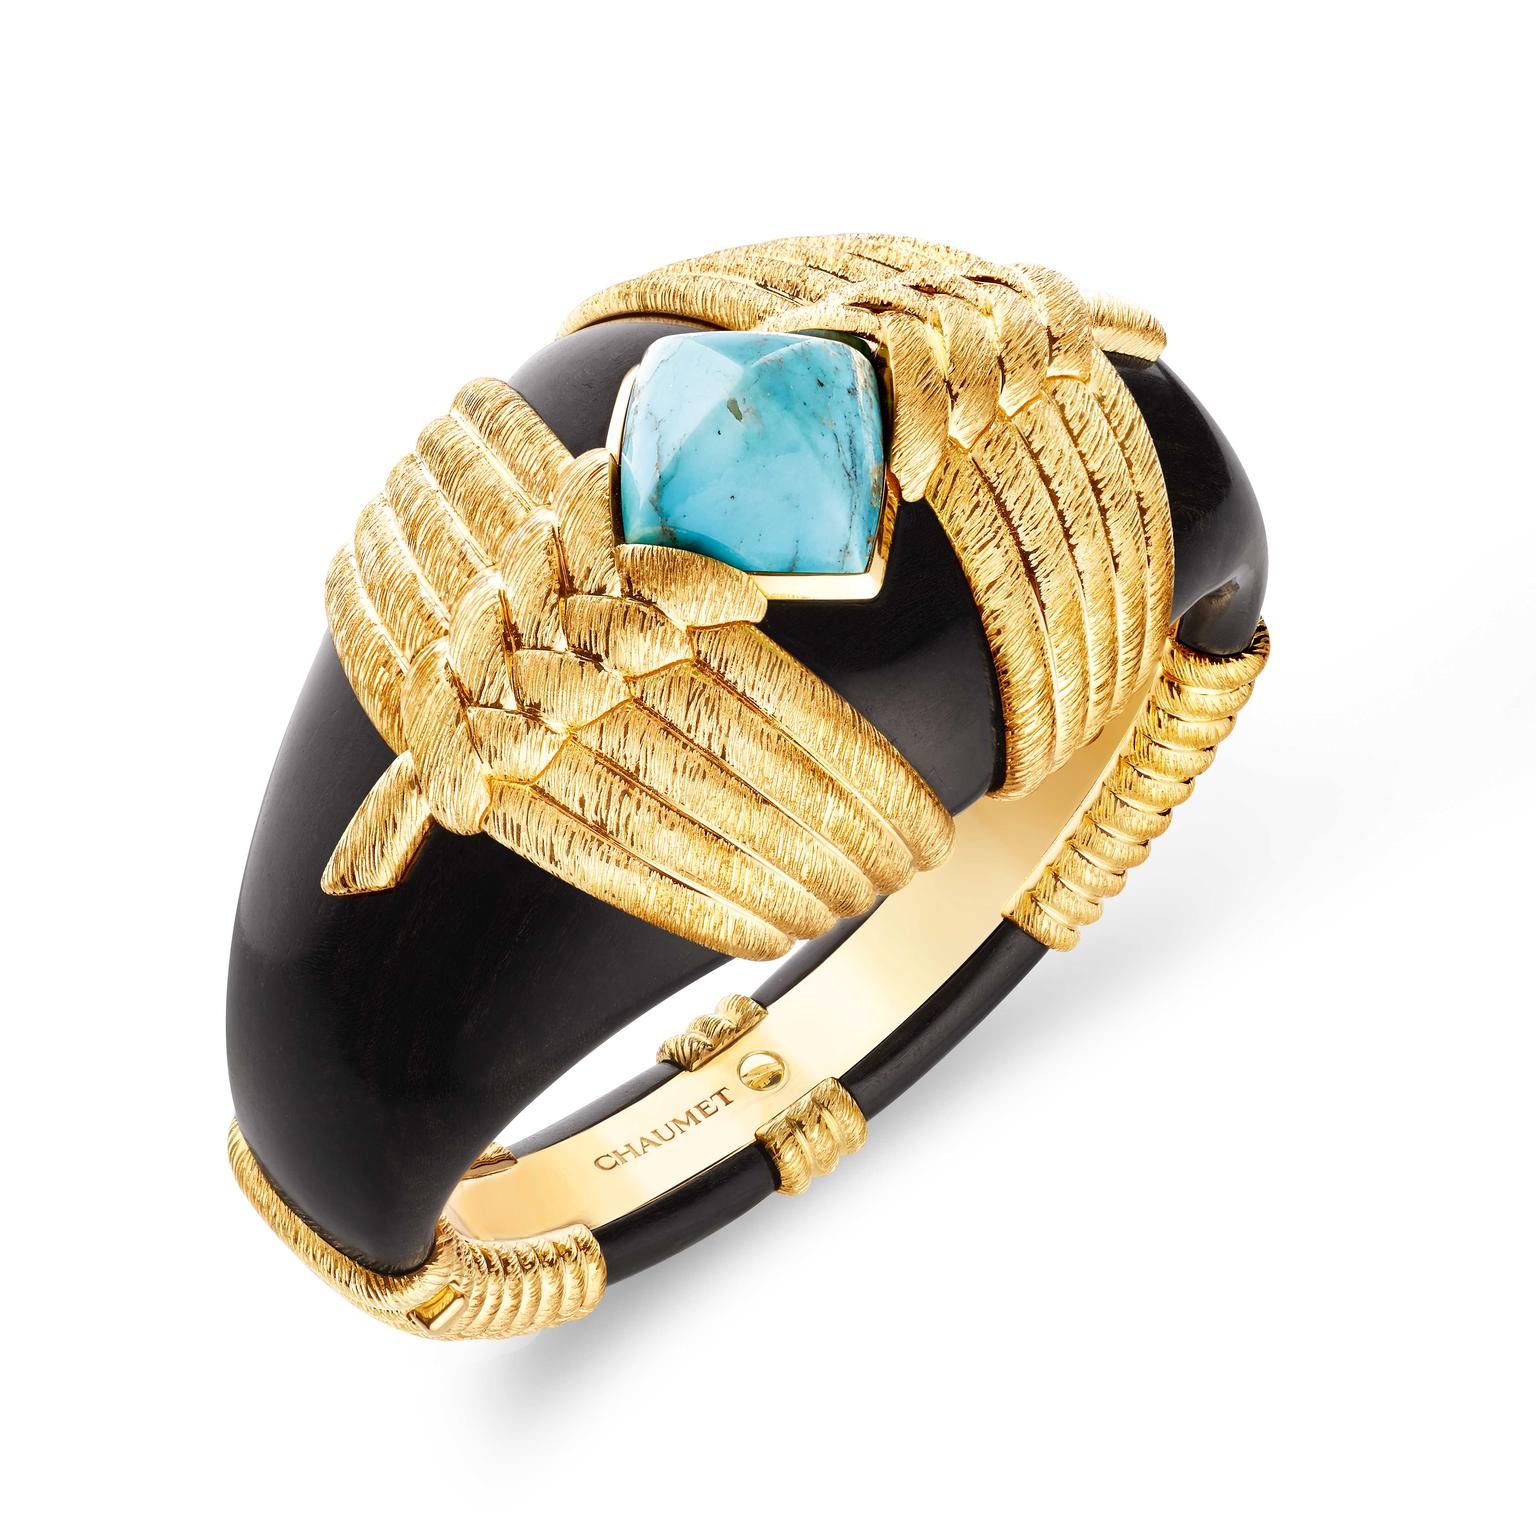 Les Mondes de Chaumet  Talismania bracelet in ebony and turquoise